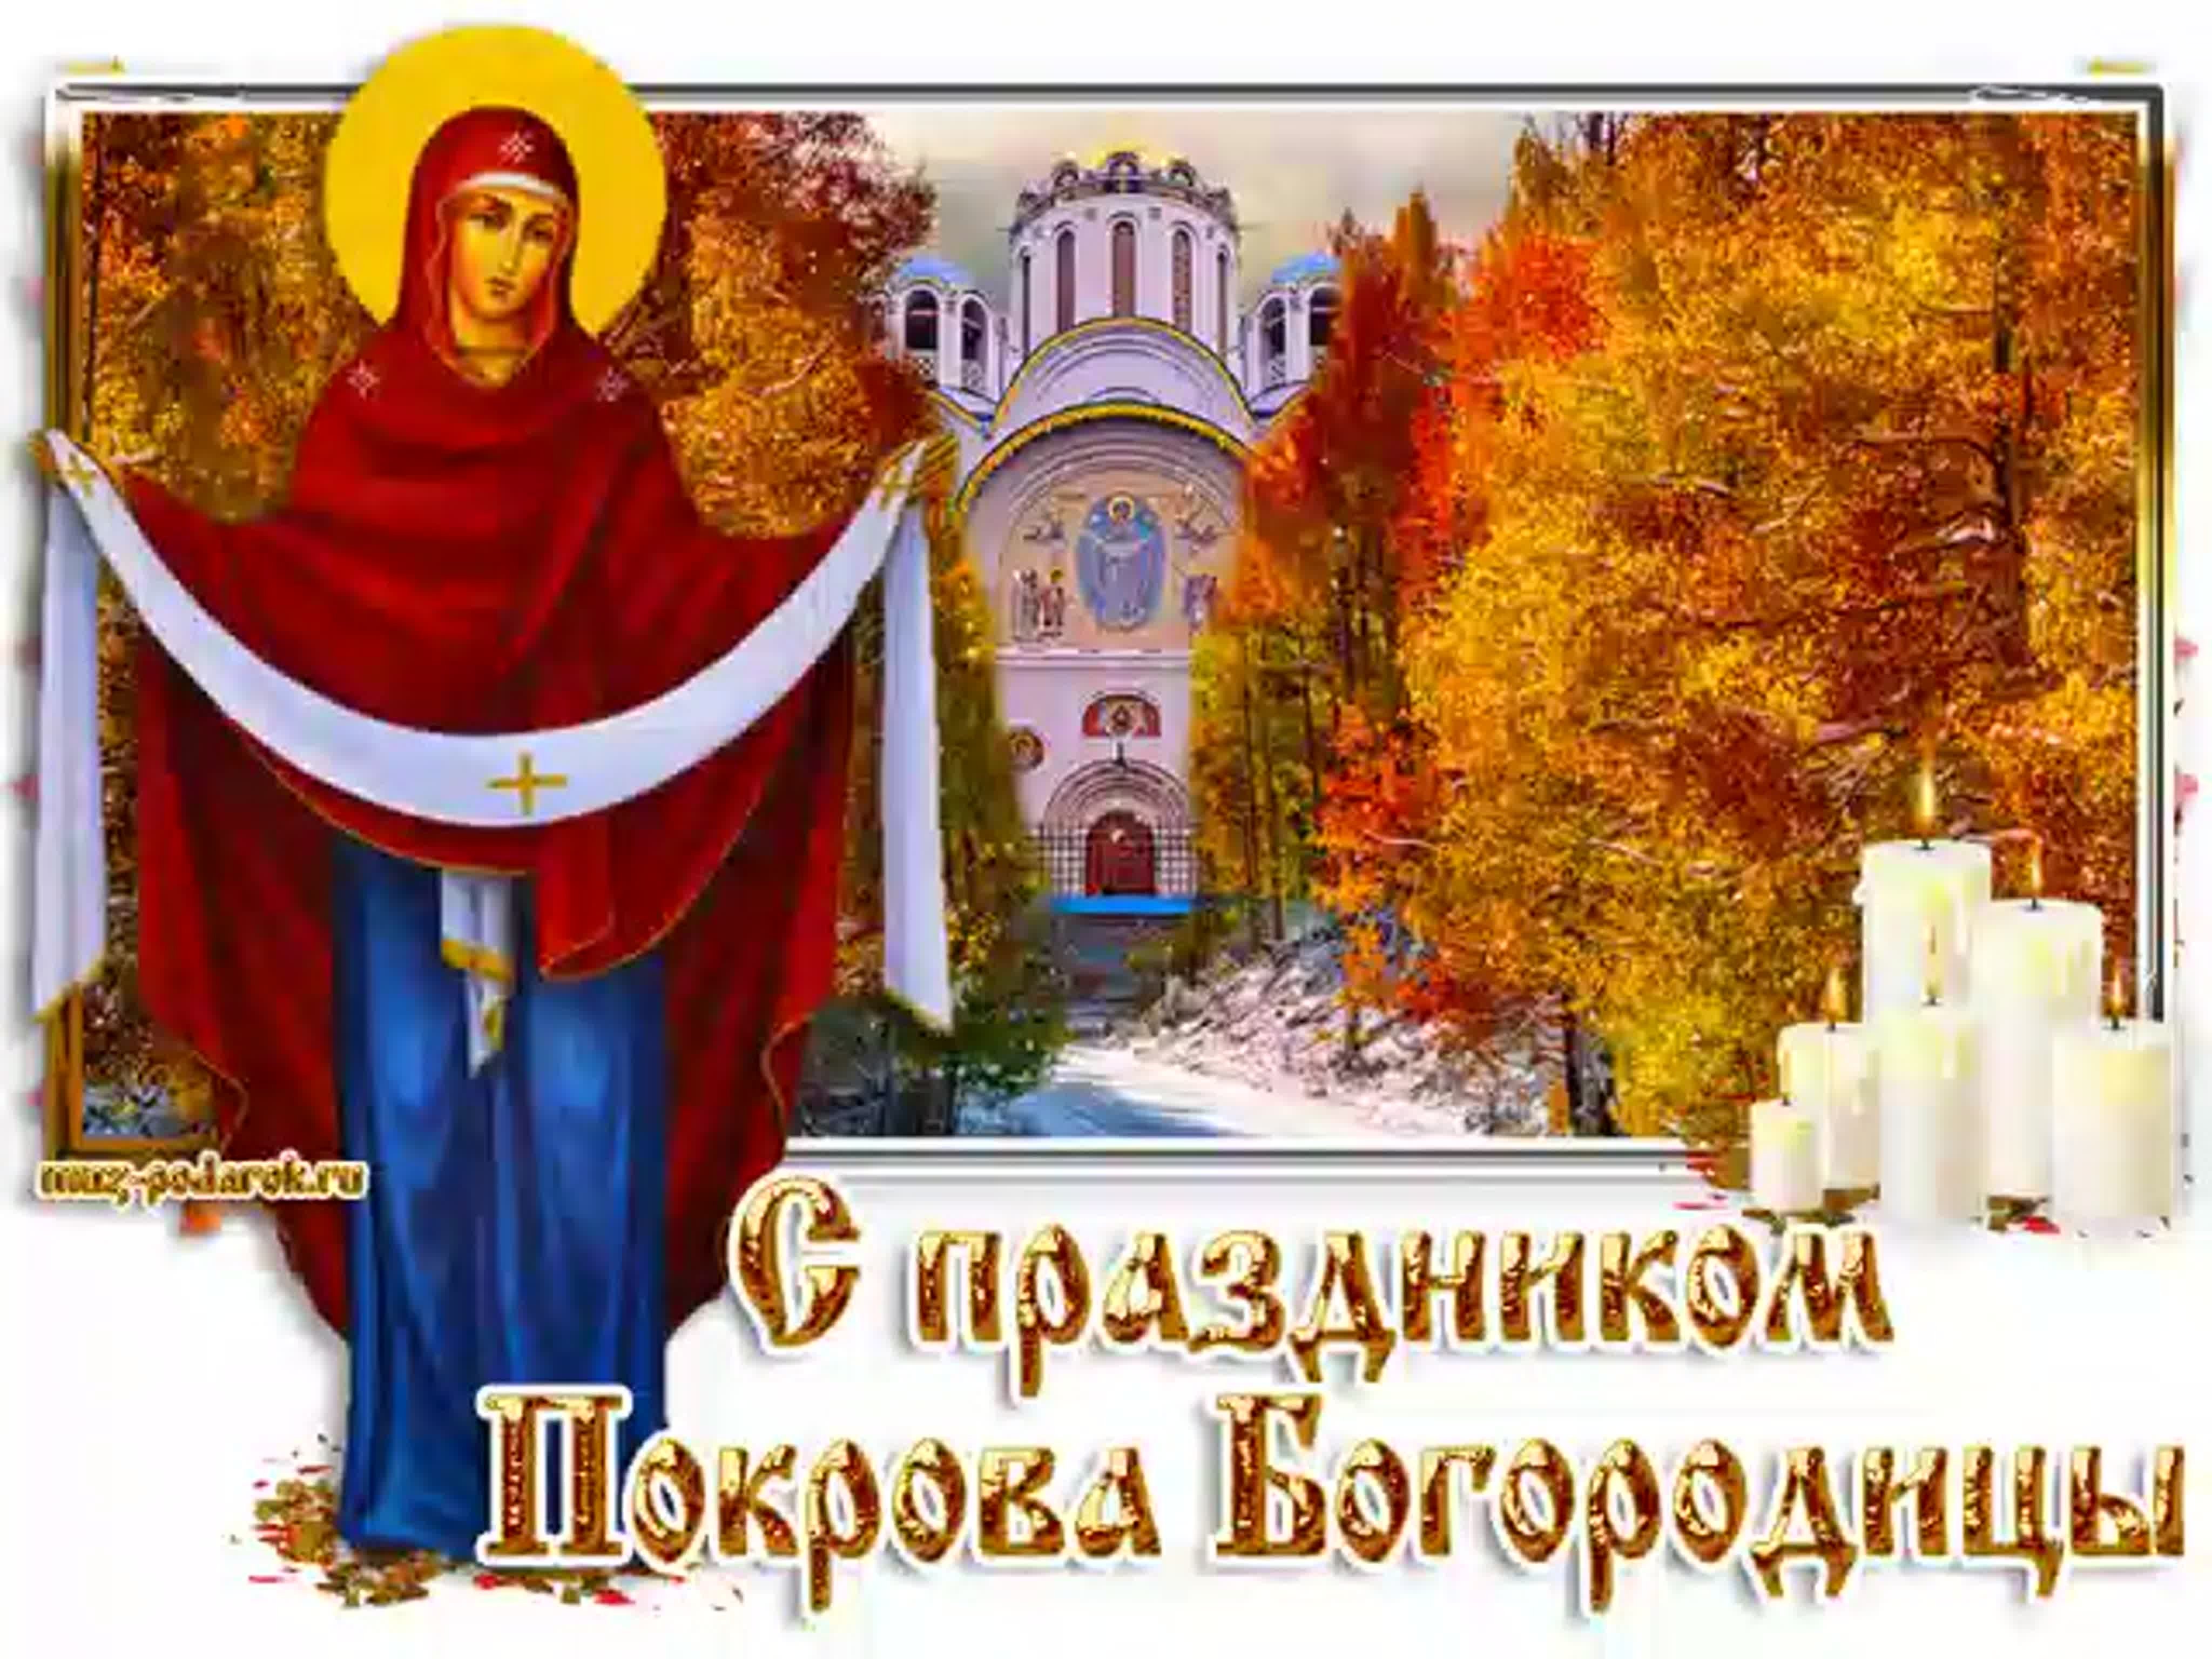 с праздником святой богородицы 14 октября картинки